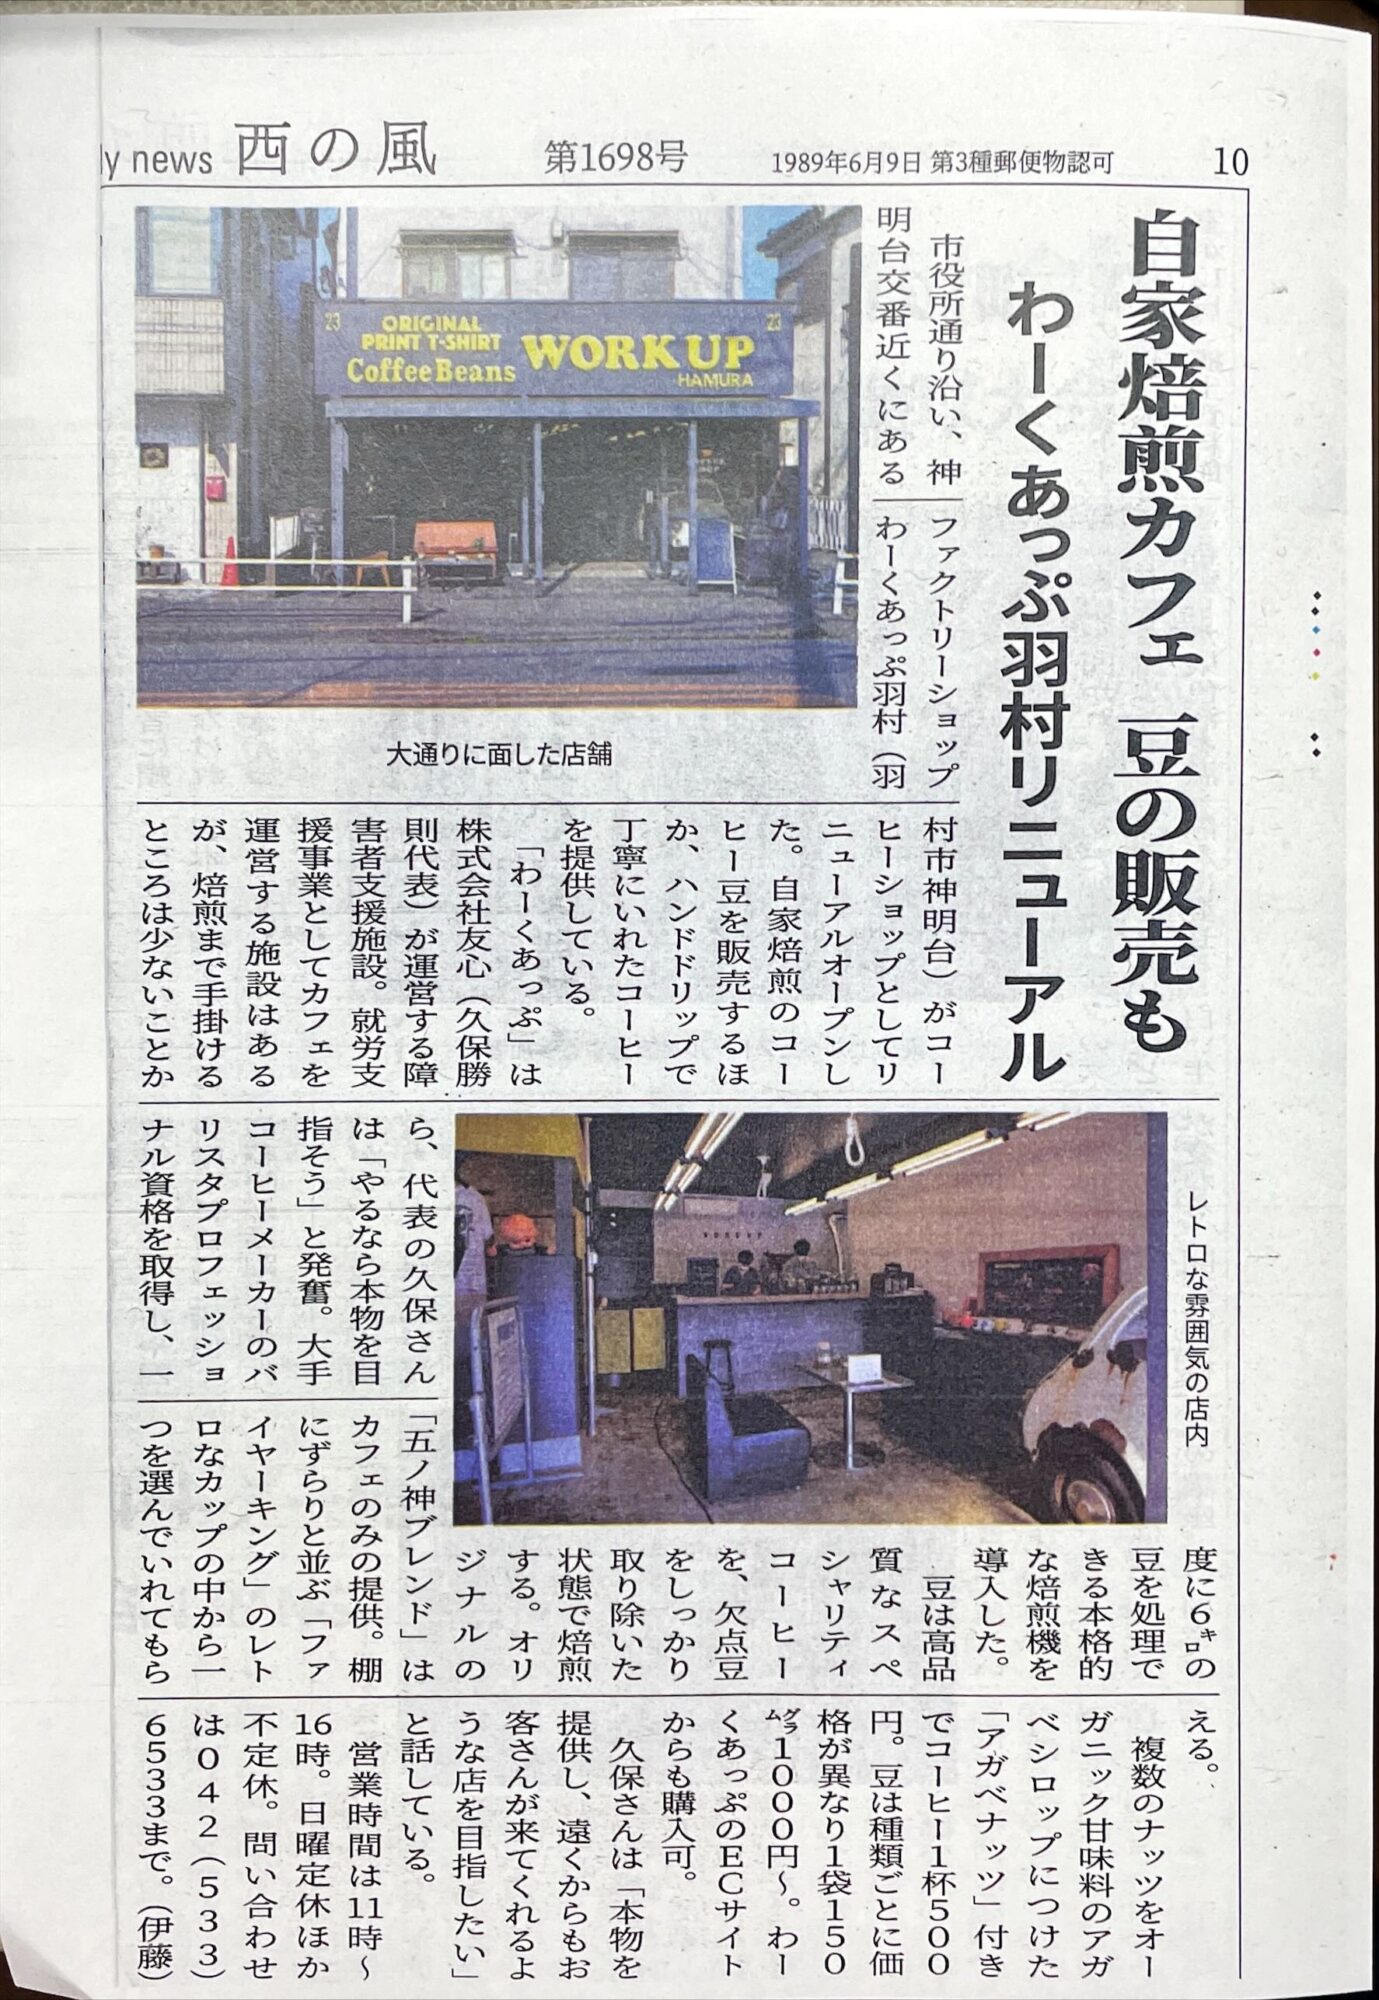 わーくあっぷ羽村が西の風新聞に掲載されました。